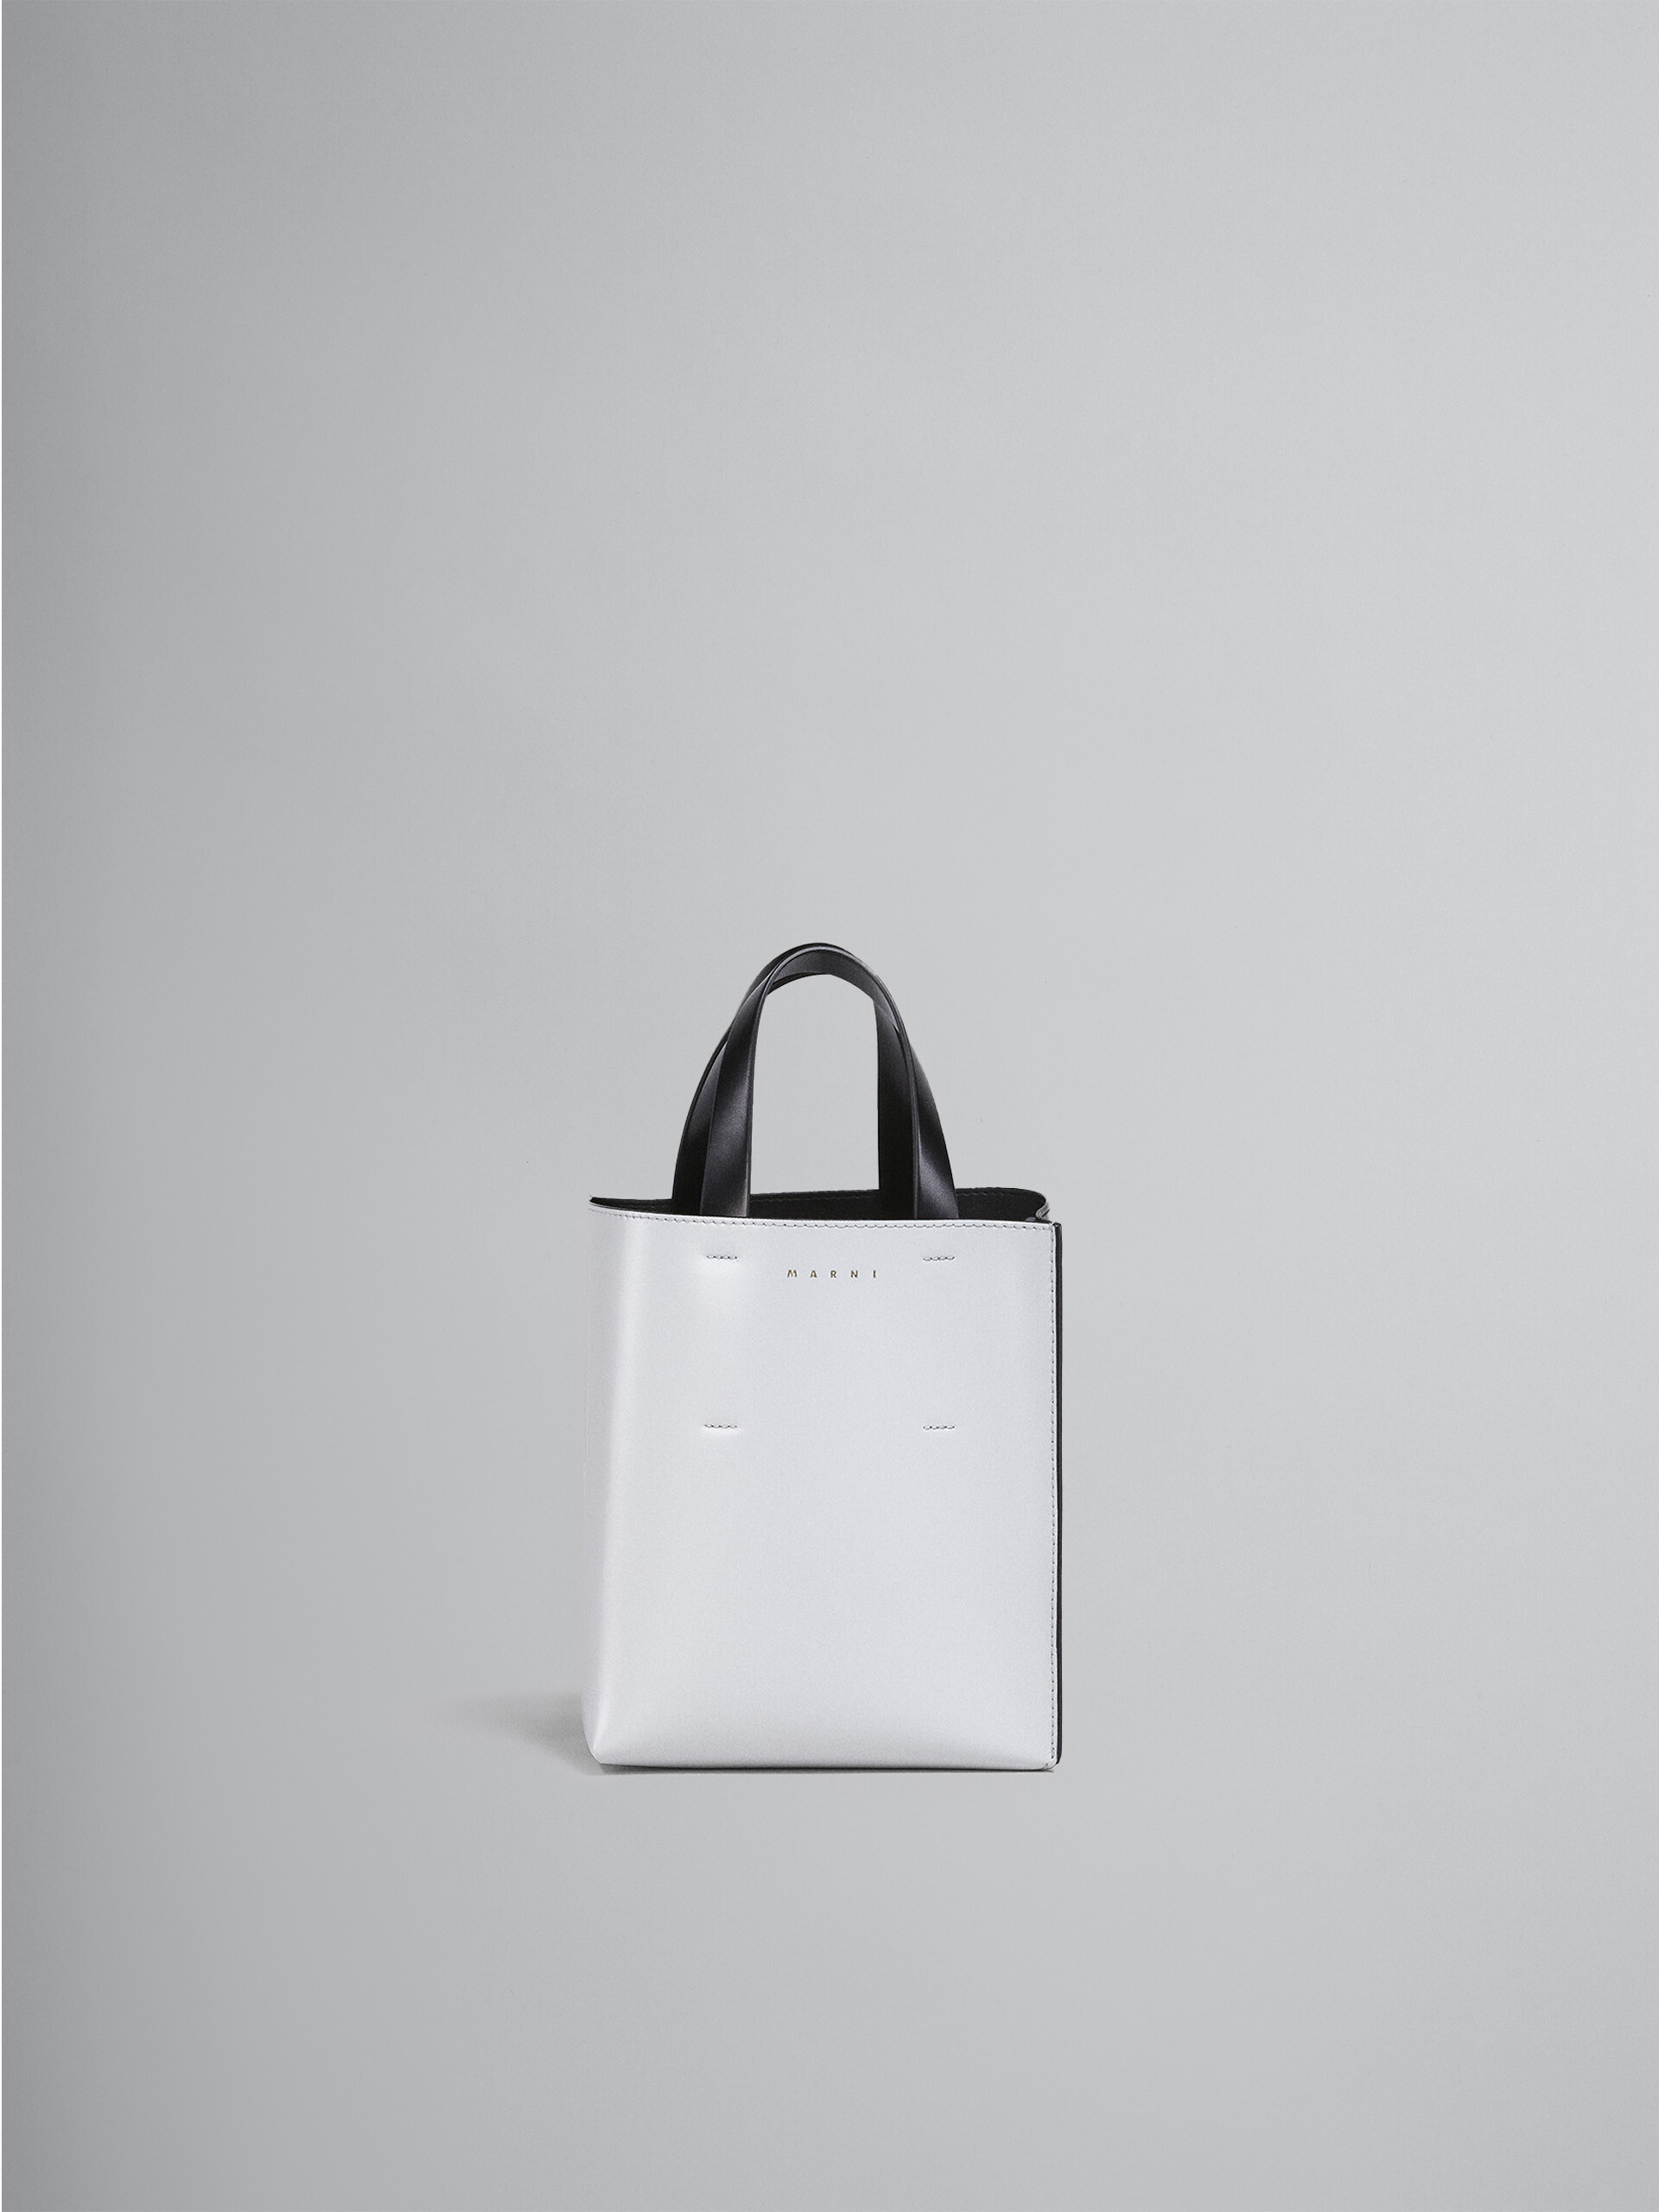 シャイニーカーフスキン MUSEO バッグ バイカラー ショルダーストラップ付き - ショッピングバッグ - Image 1